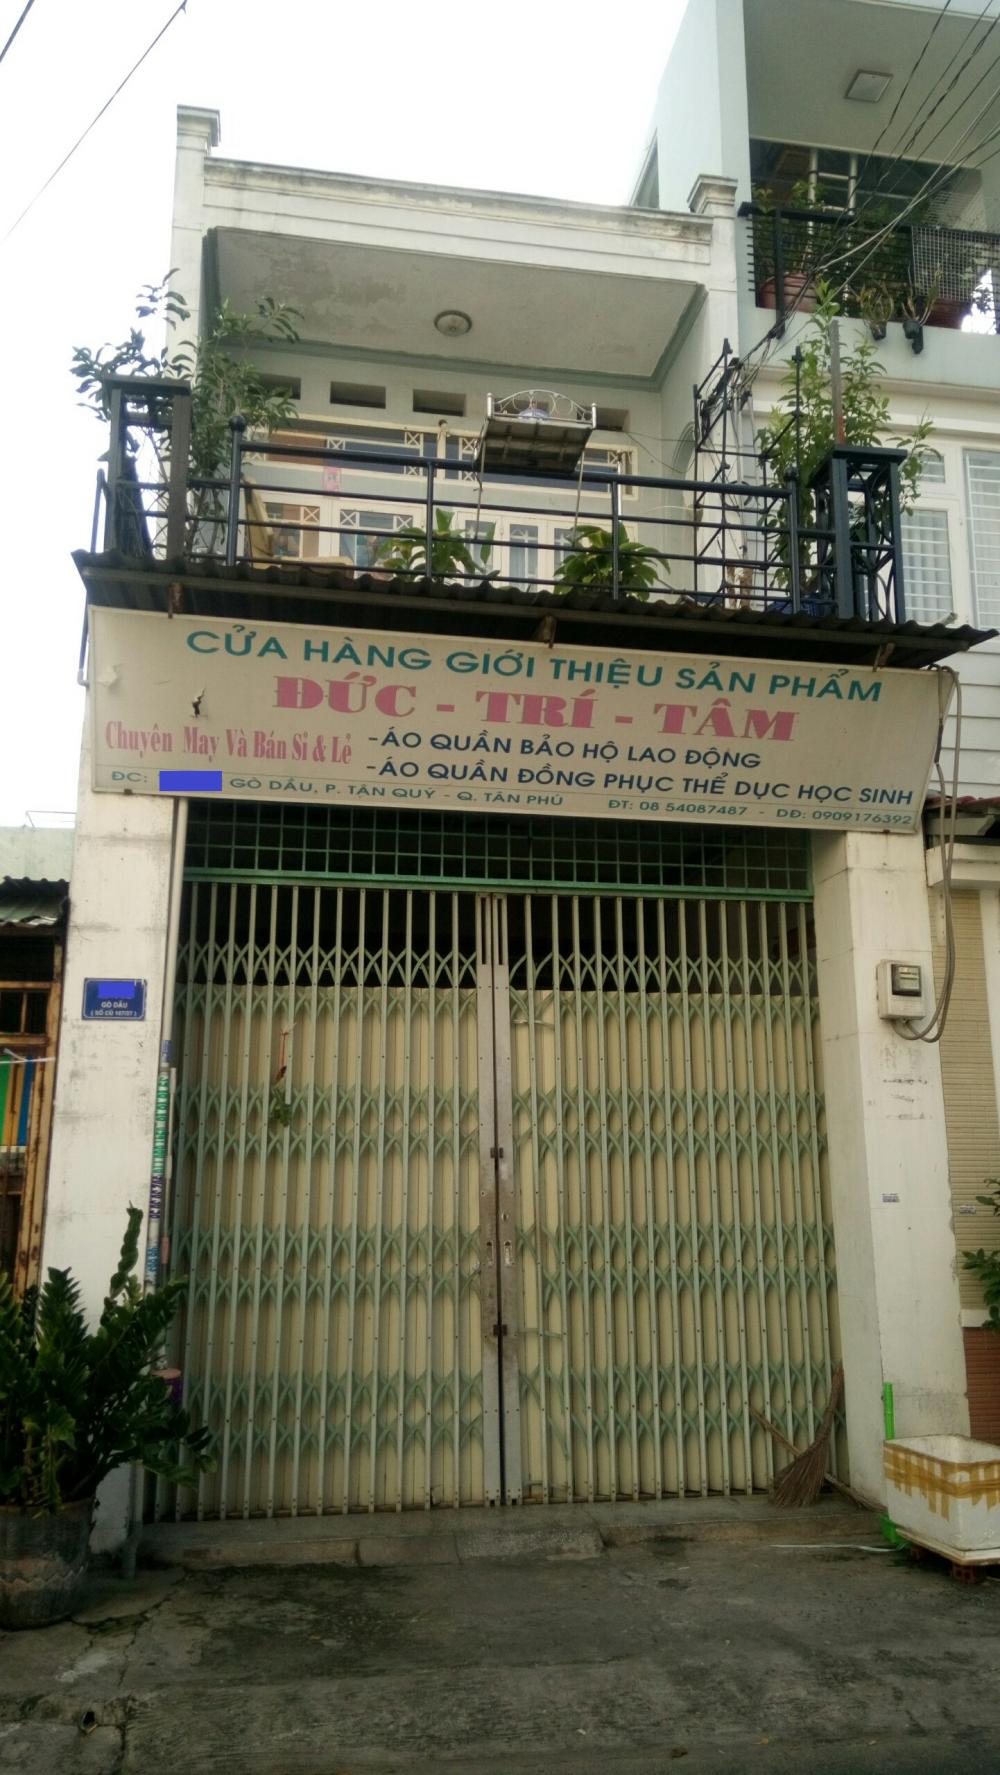 Bán nhà hẻm 8m Gò Dầu, P. Tân Quý, Q. Tân Phú, DT 4x21m, 1 trệt 1 lầu, giá 6.5 tỷ